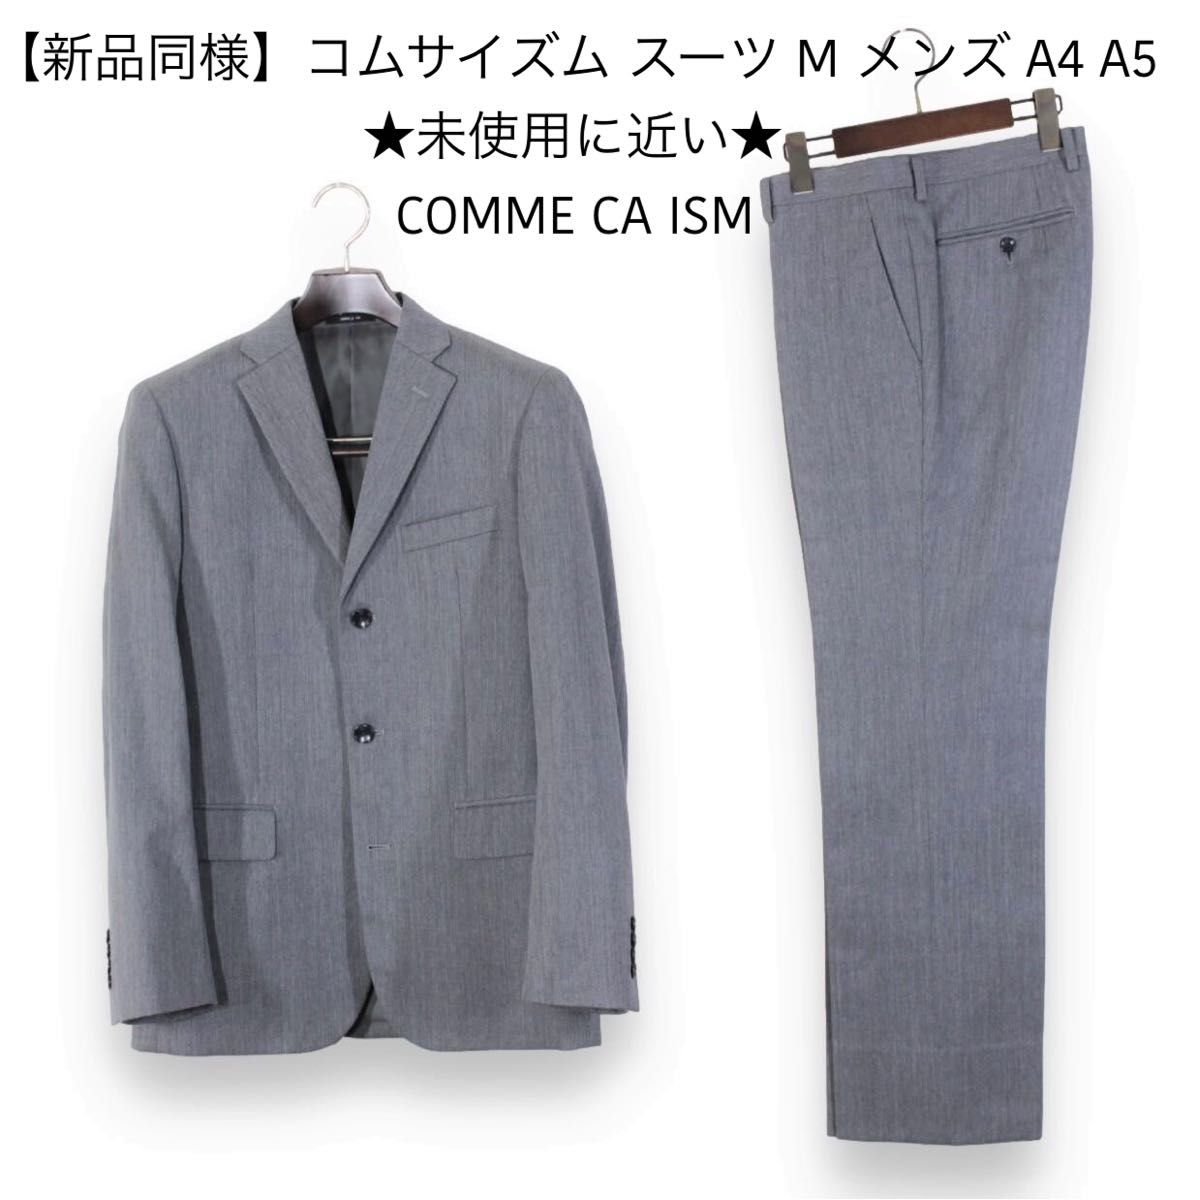 19【新品同様】コムサイズム スーツ M メンズ A4 A5くらい 未